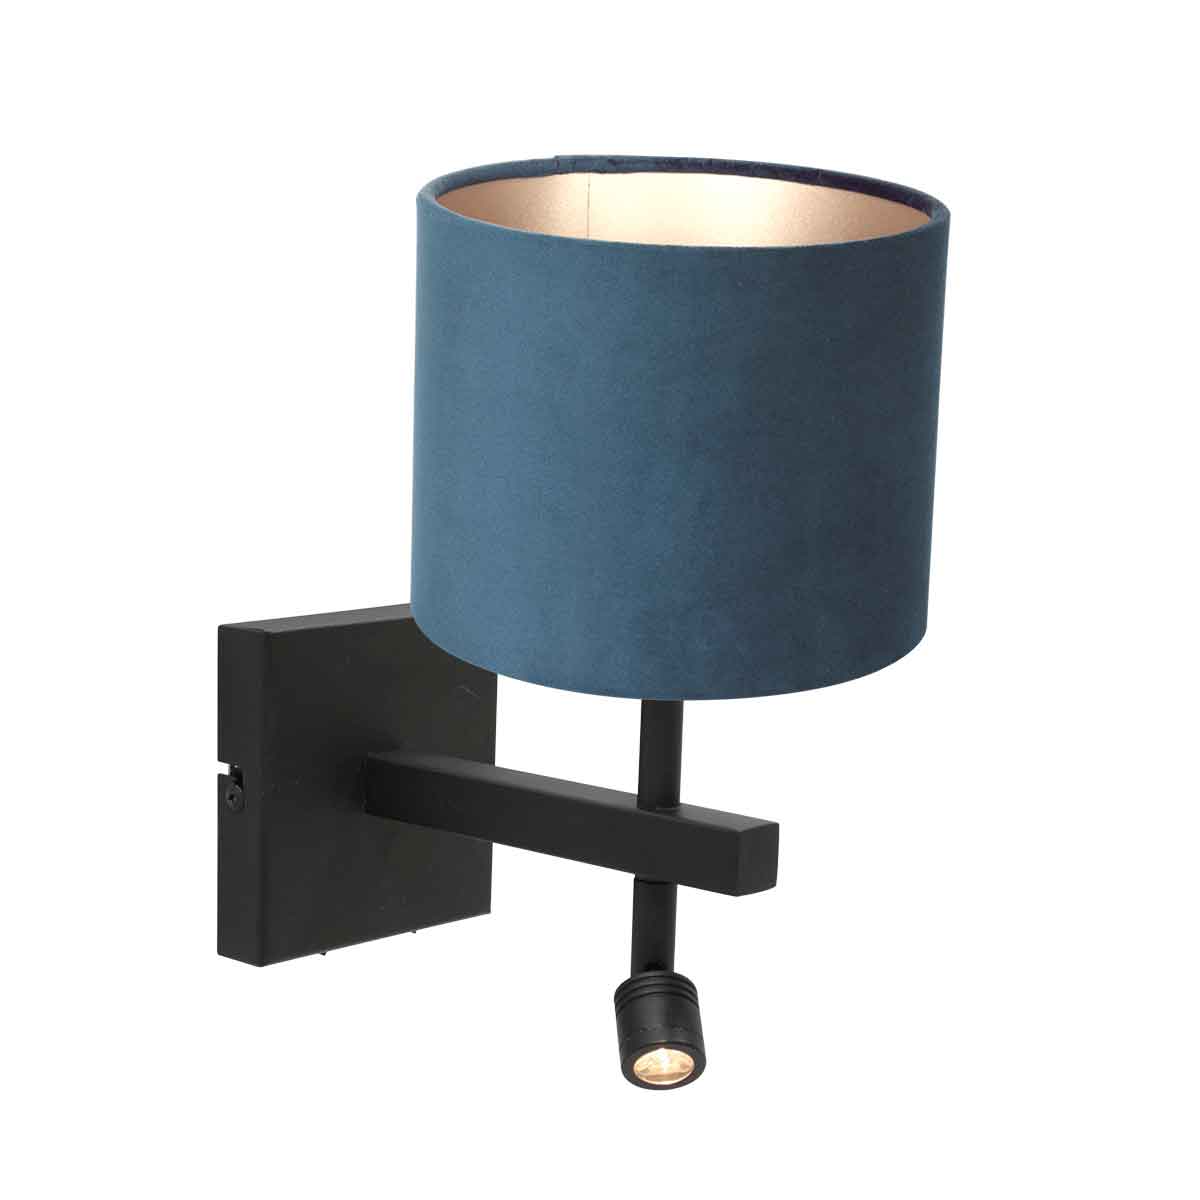 Steinhauer Wandlamp Stang | 2 lichts | draai-&kantelbaar |Ø 20 cm | blauw velours